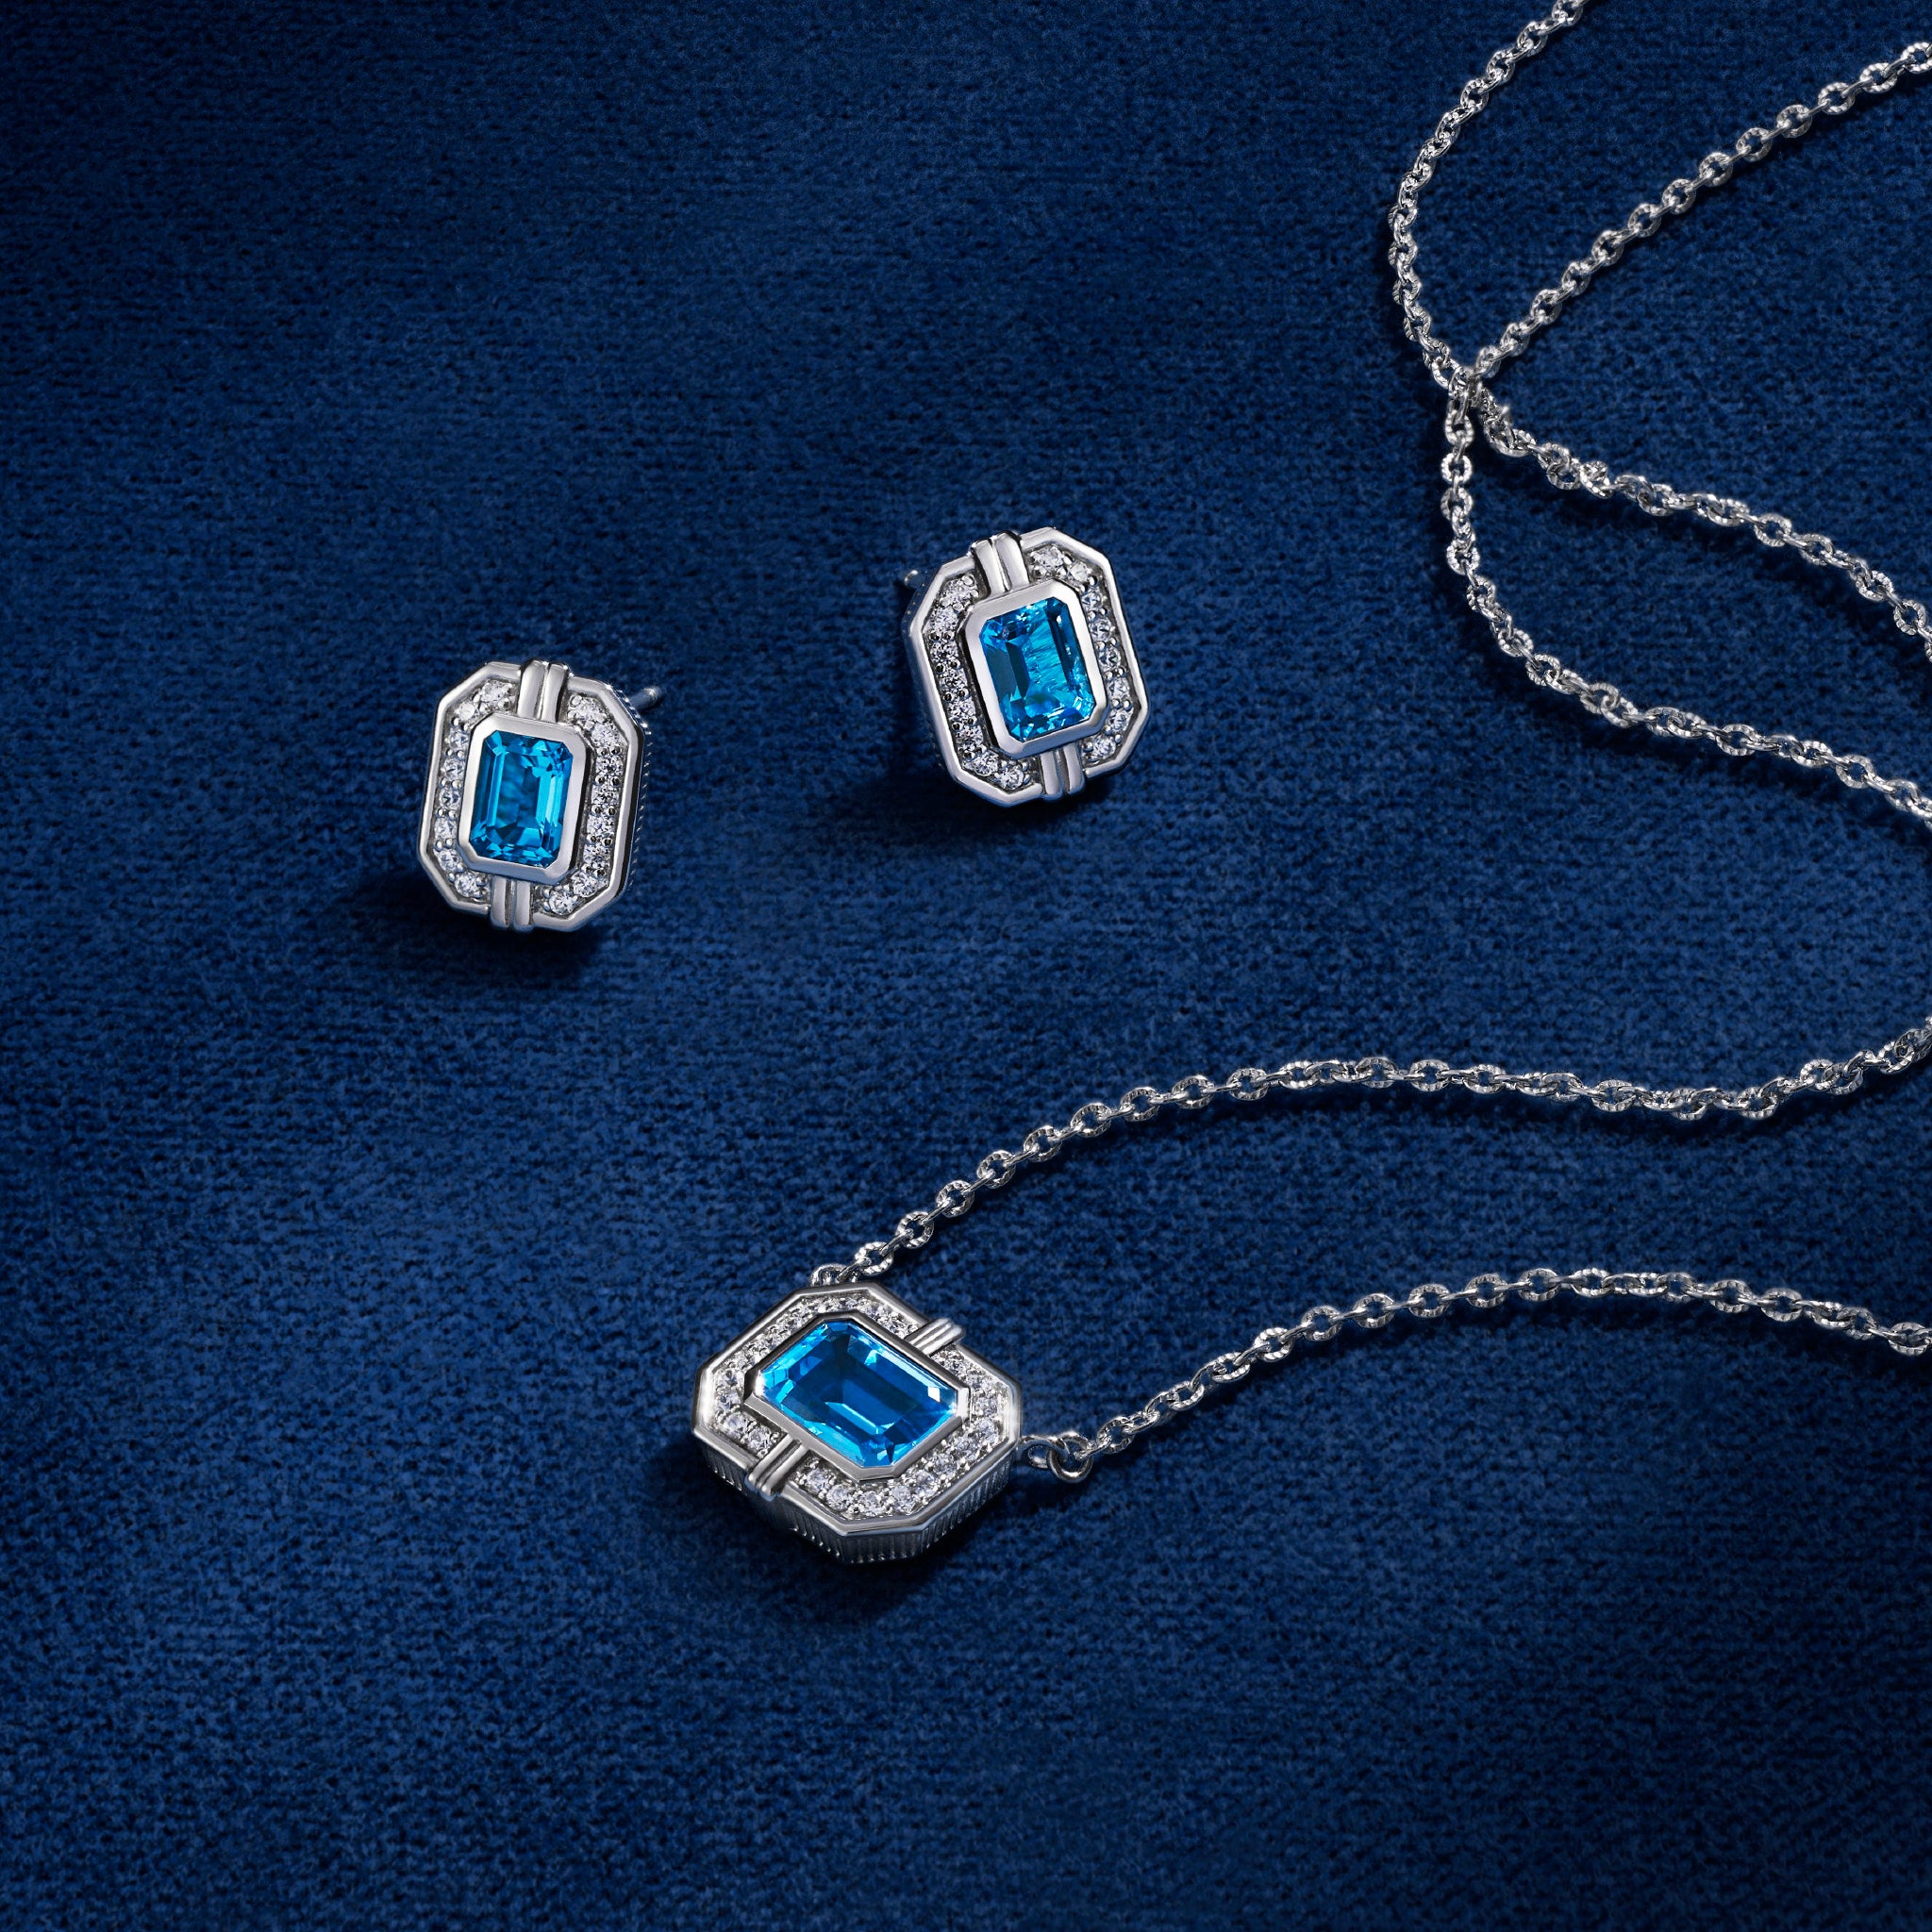 Adrienne Necklace with Swiss Blue Topaz and Diamonds